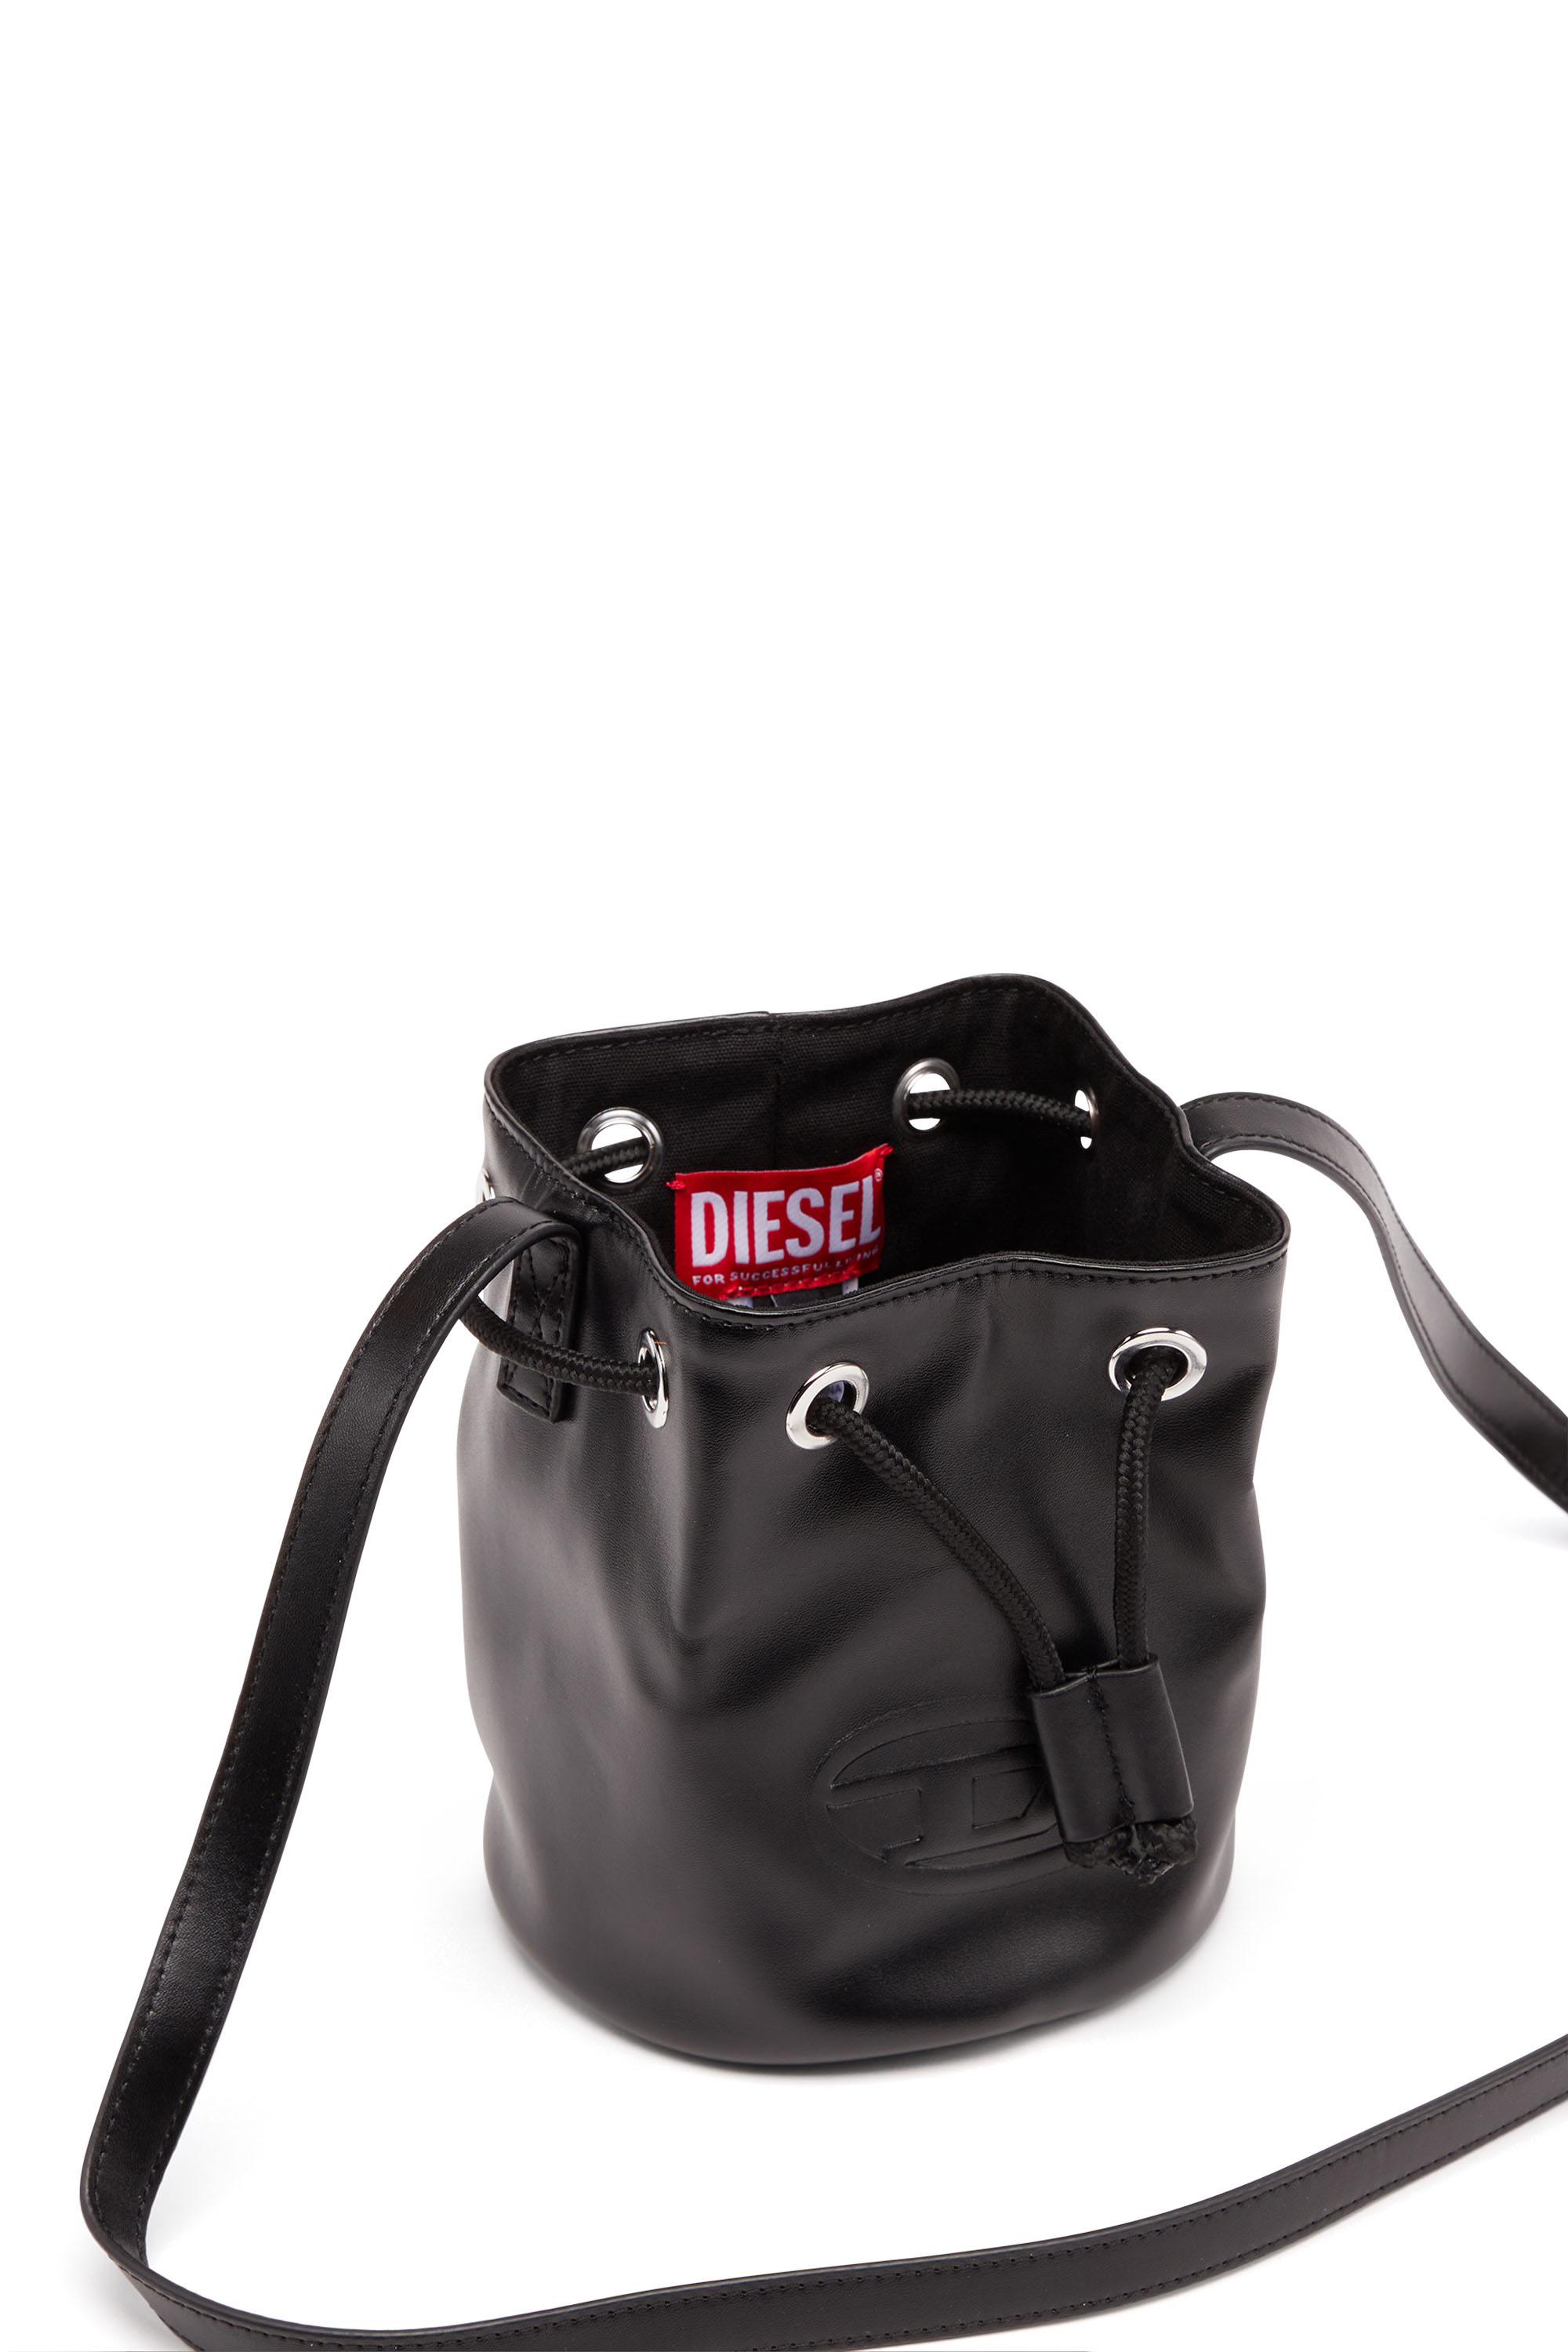 Diesel - WELLTY, Black - Image 5